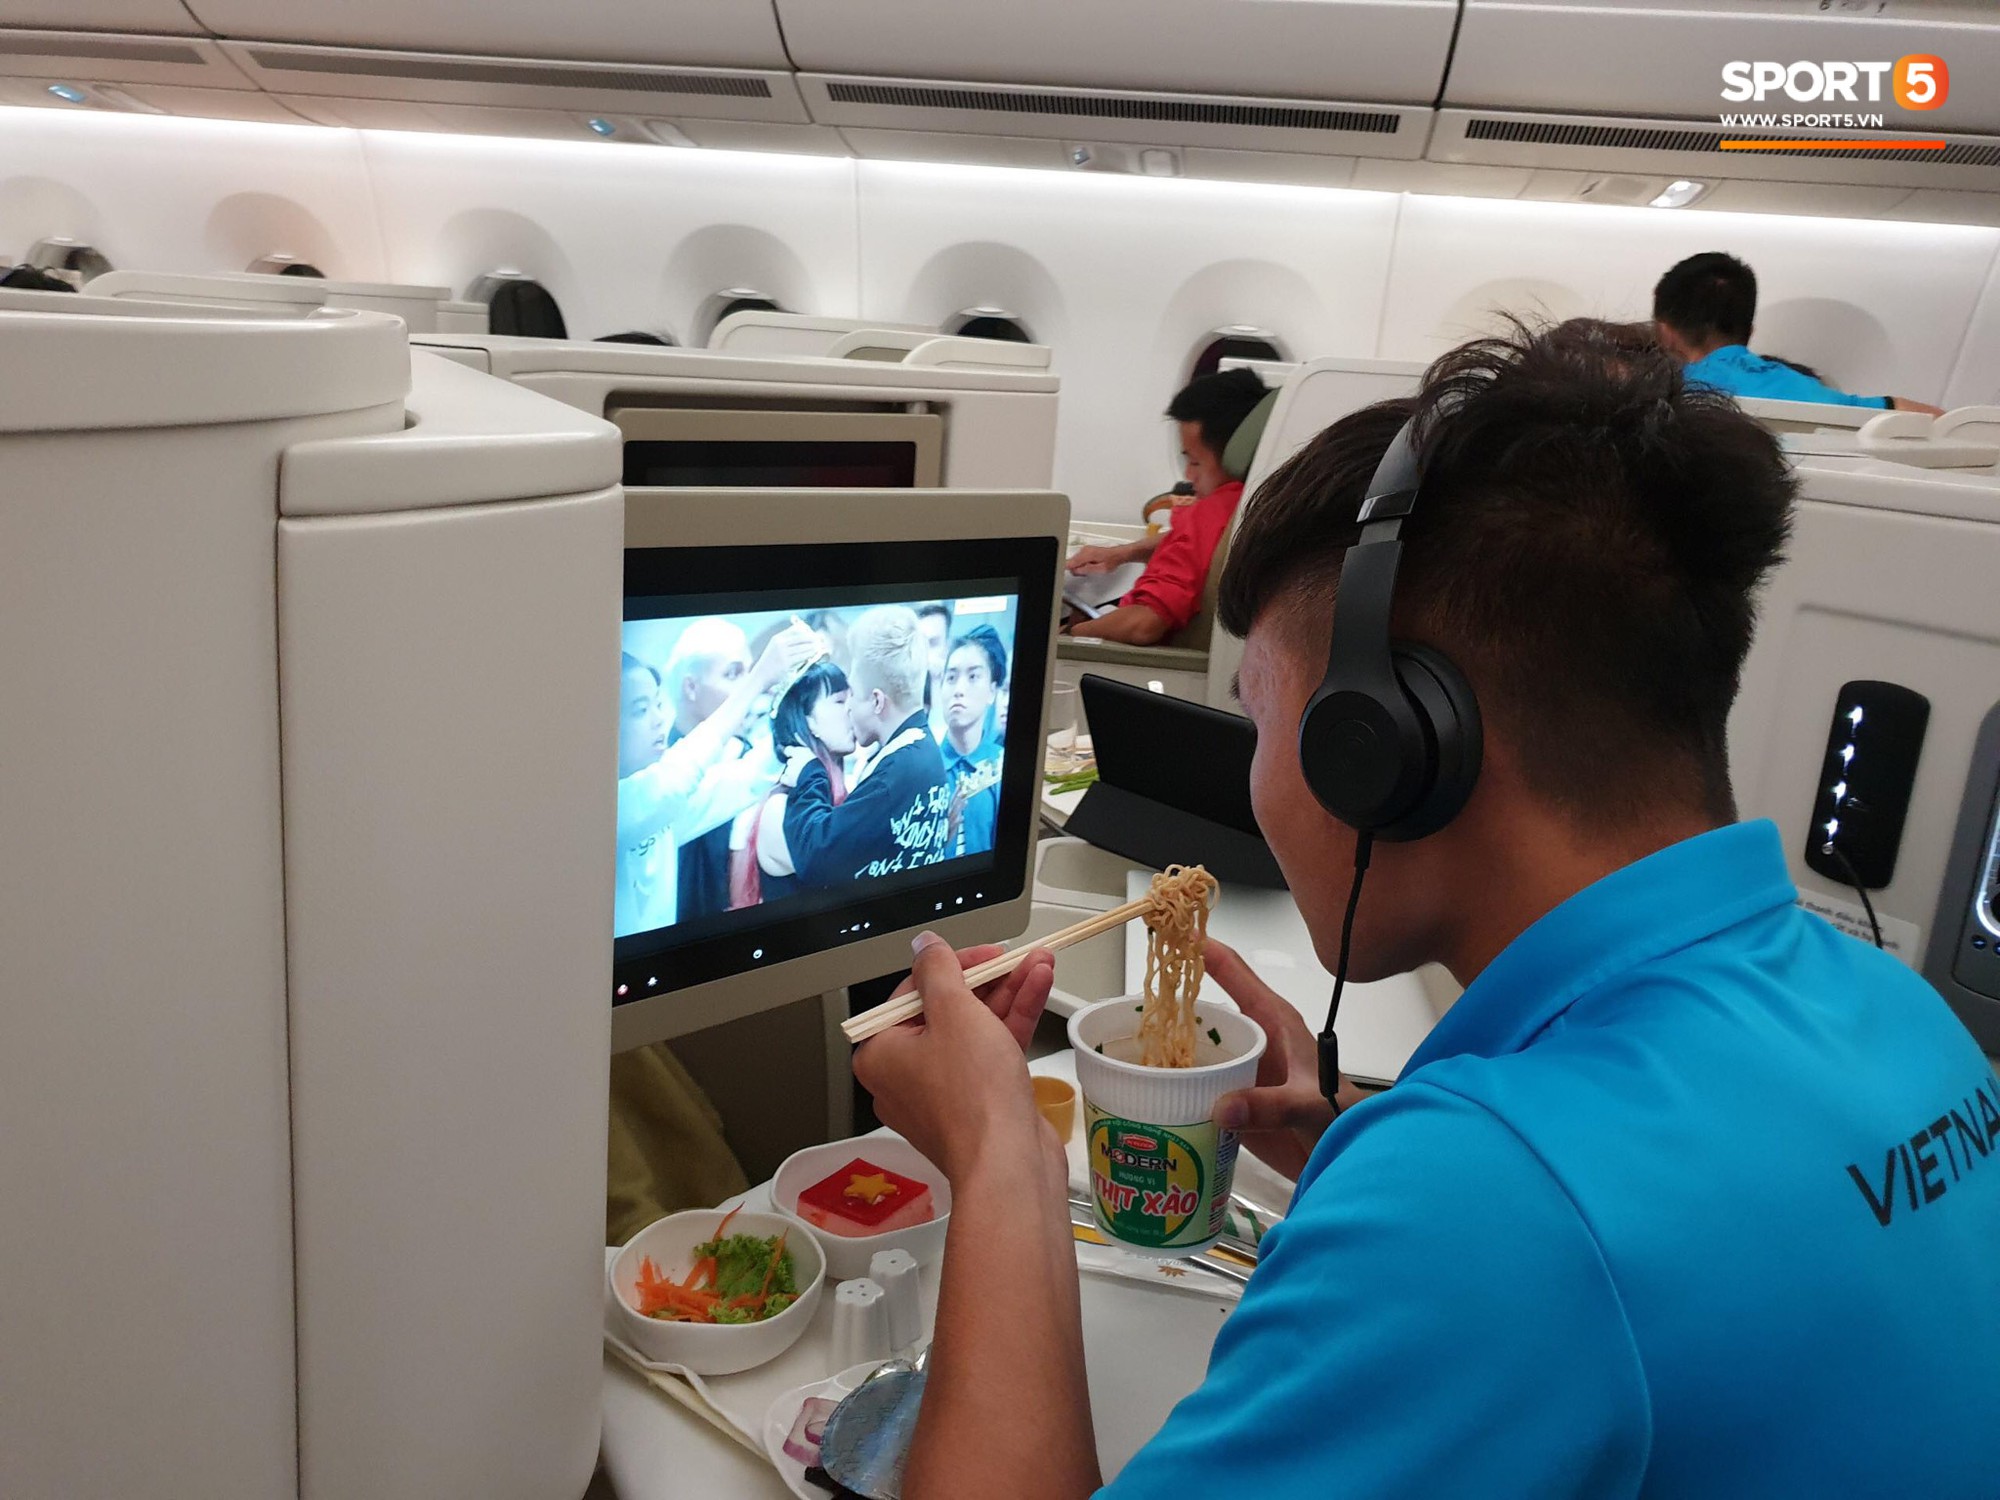 Trọng Ỉn vừa ăn mỳ tôm vừa nghiên cứu lại trận hoà Malaysia trên máy bay-6